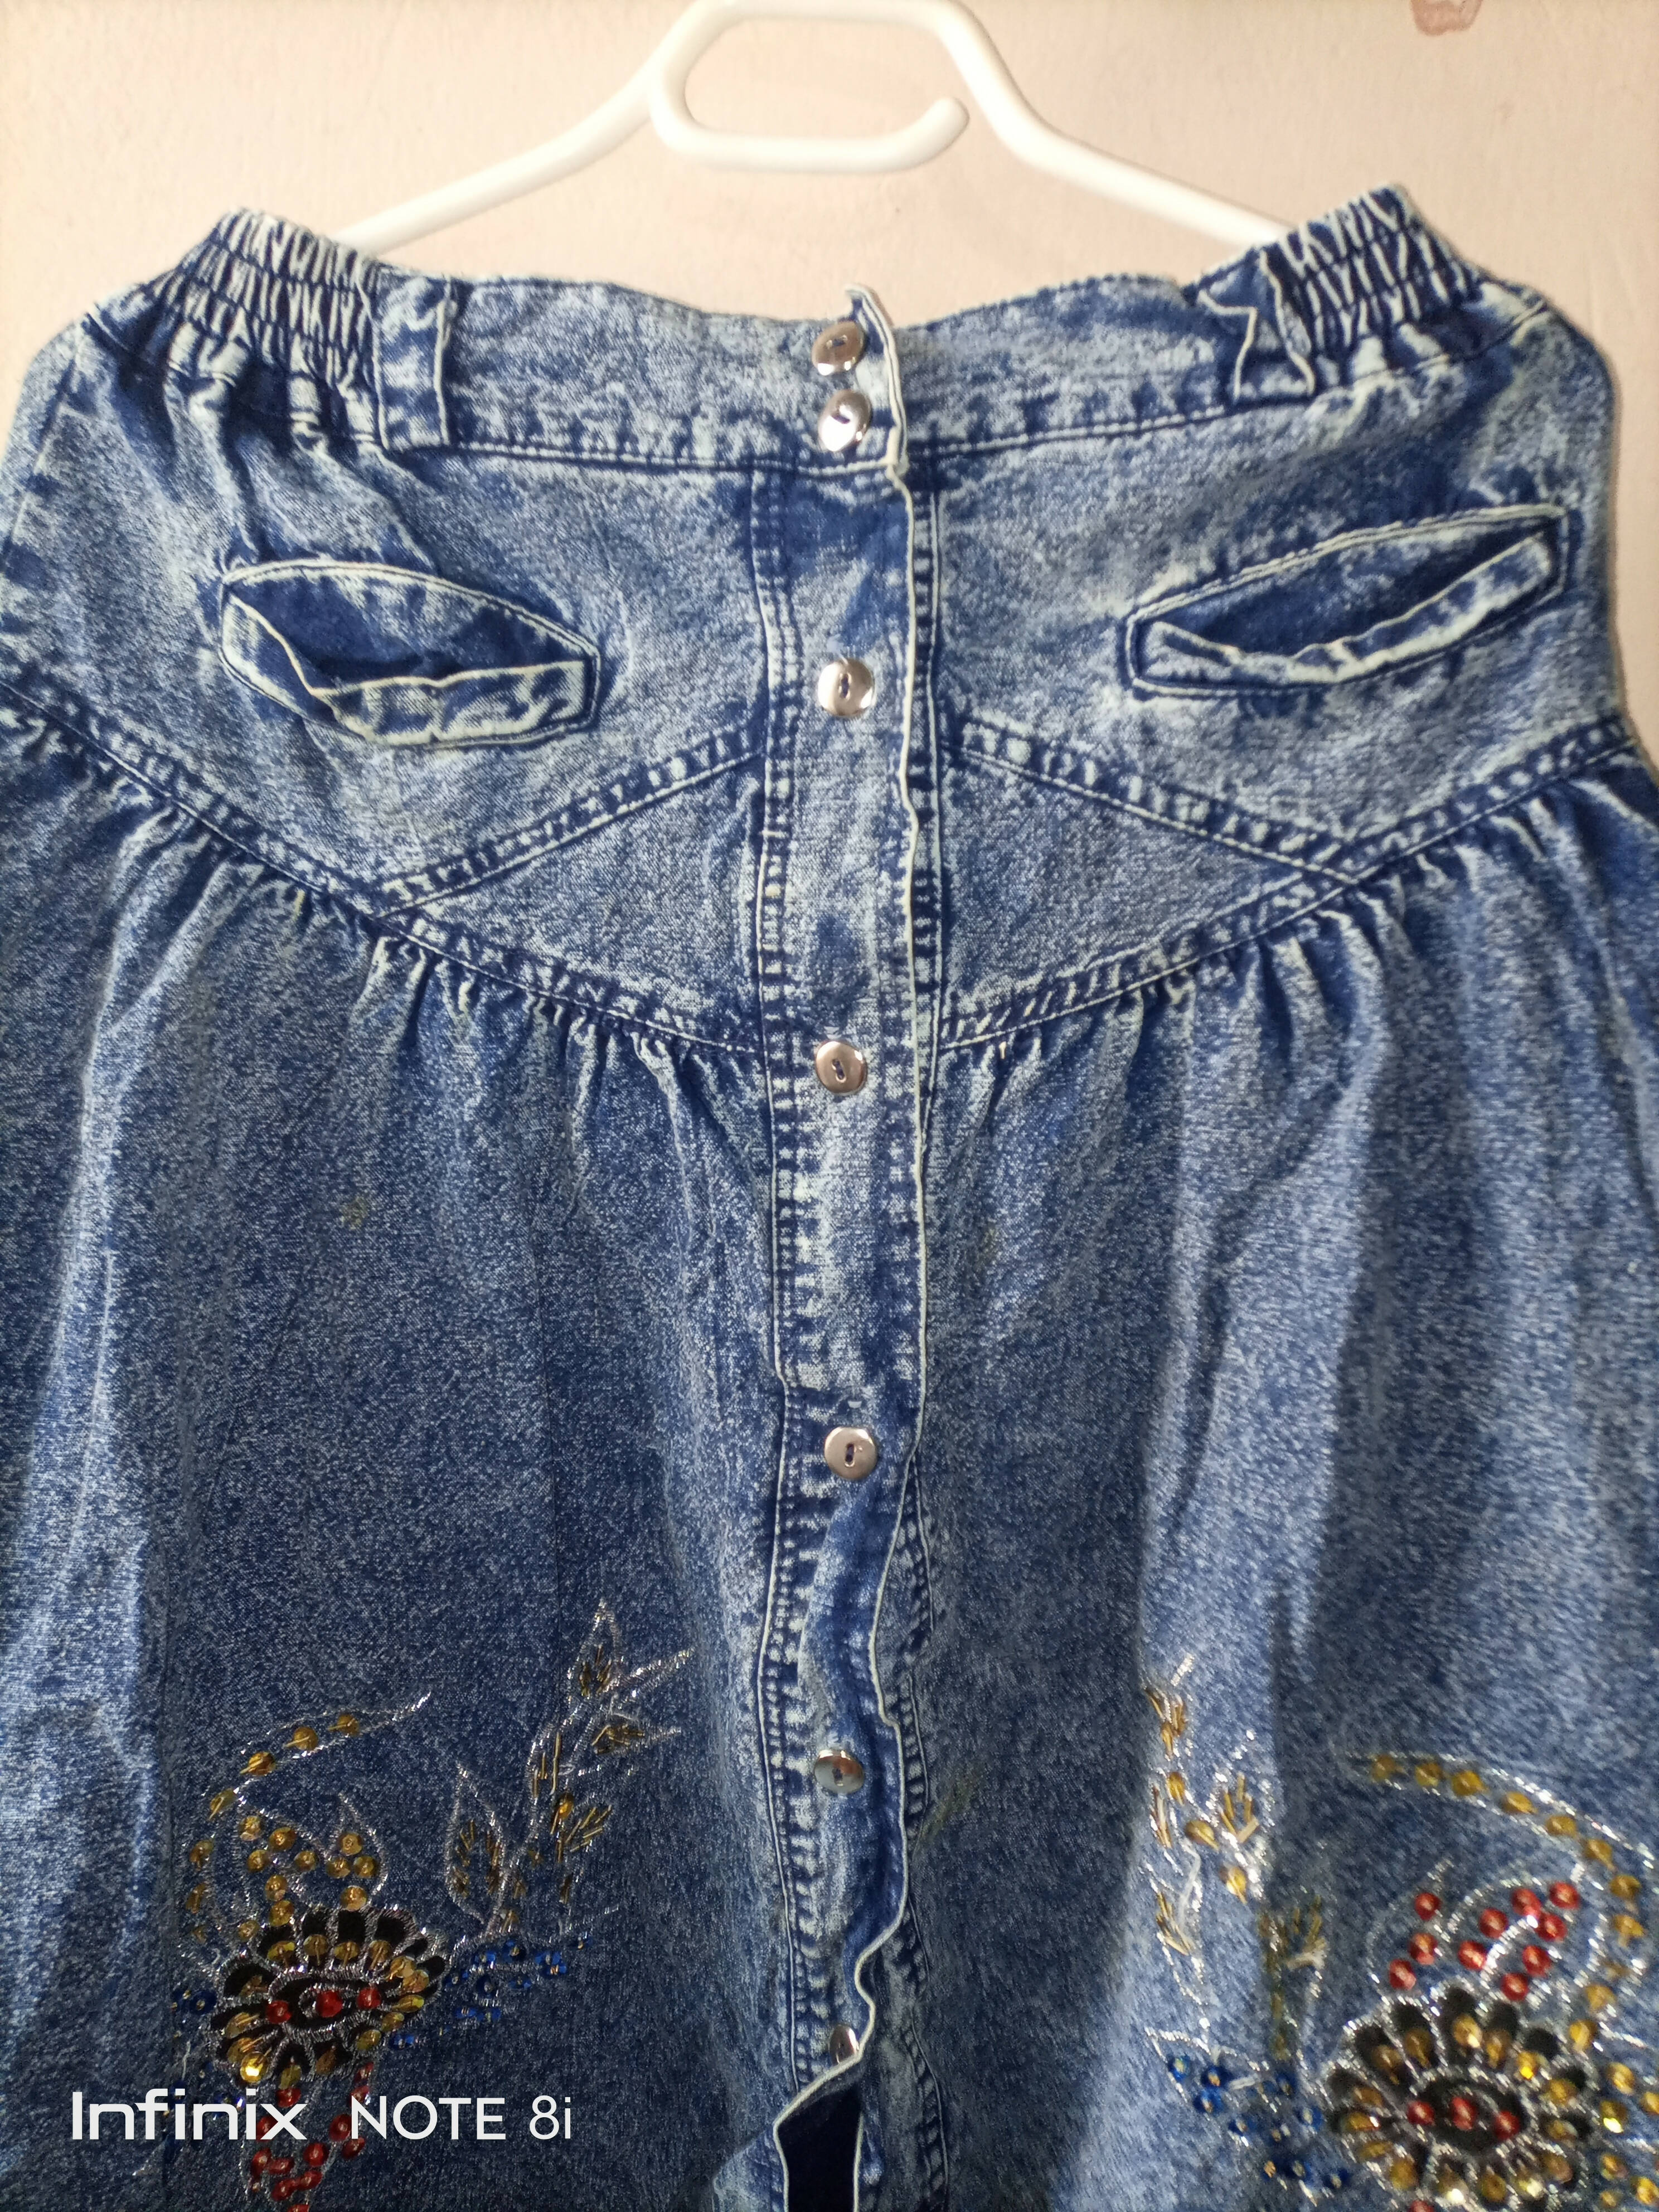 Jeans skirt for girls (Size: M ) | Girls Skirt & Dresses | Worn Once